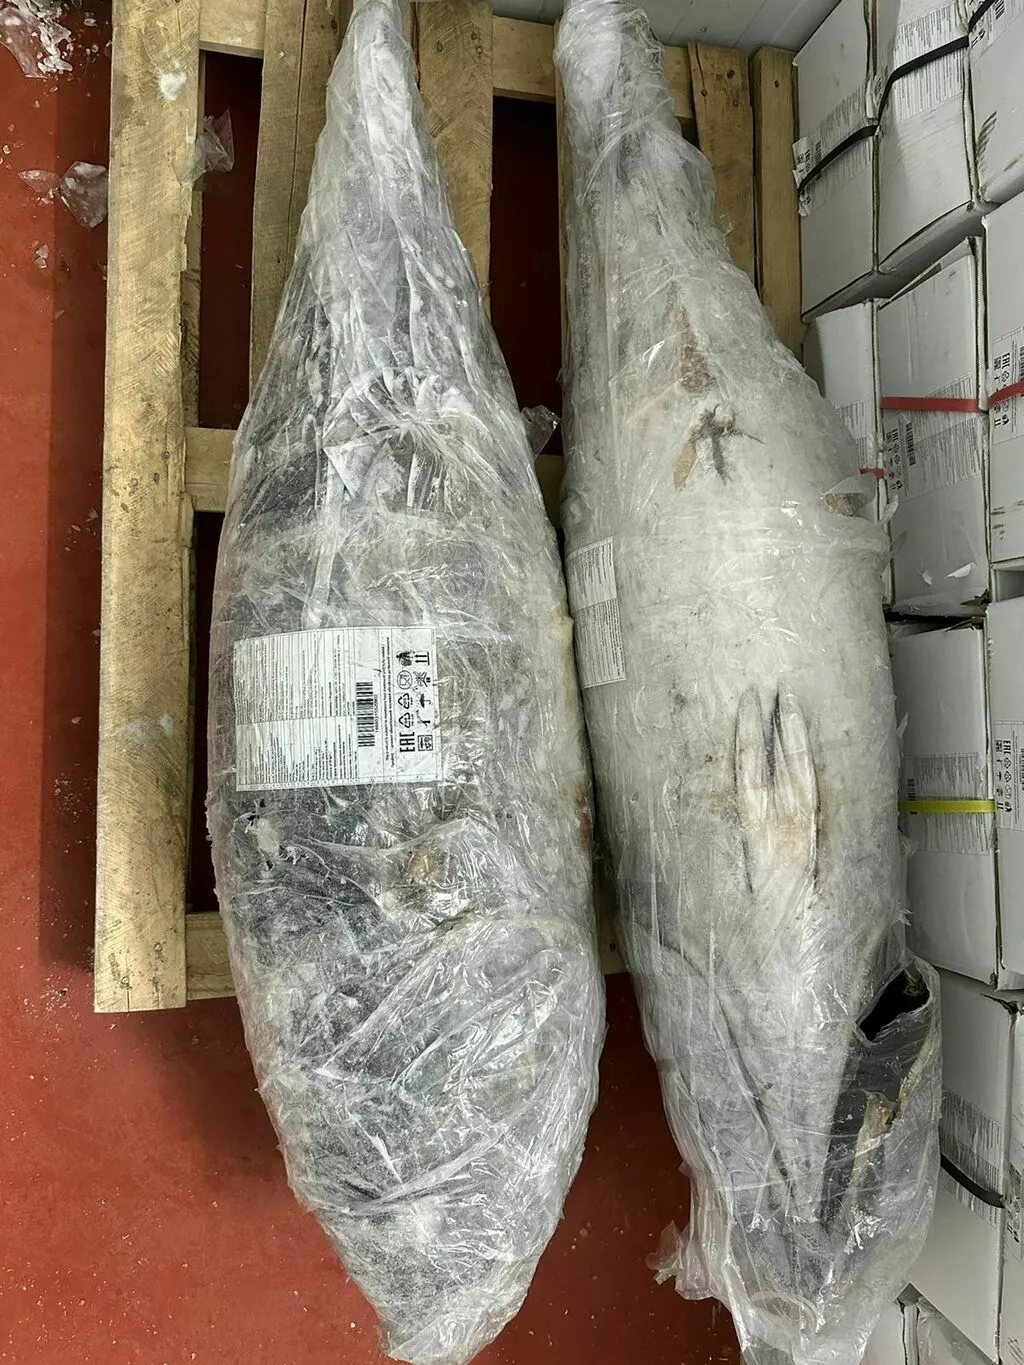 тунец блюфин 60+кг в Москве